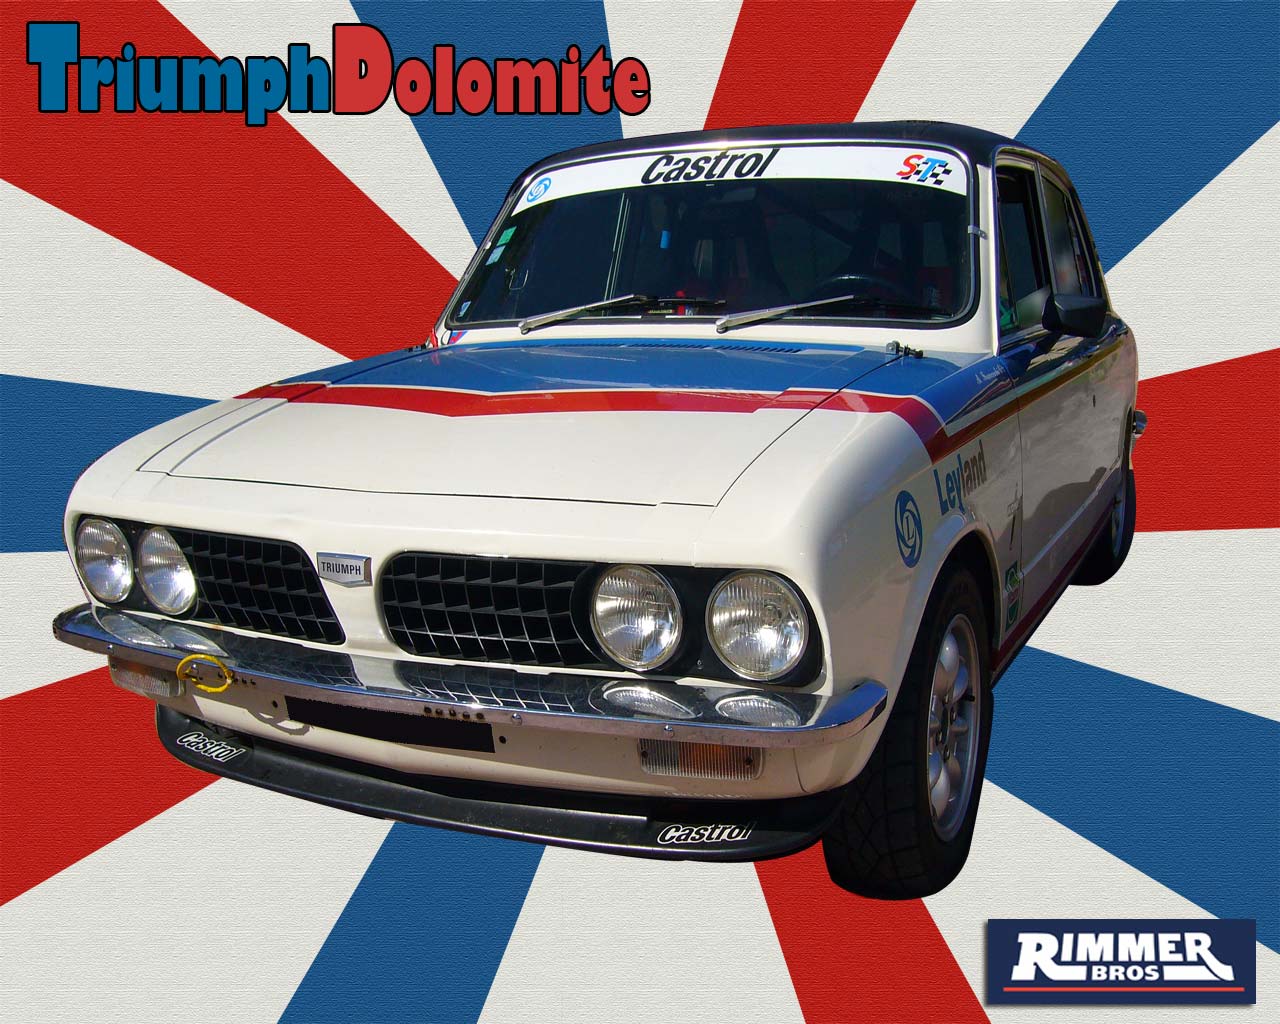 Triumph Dolomite (1280 x